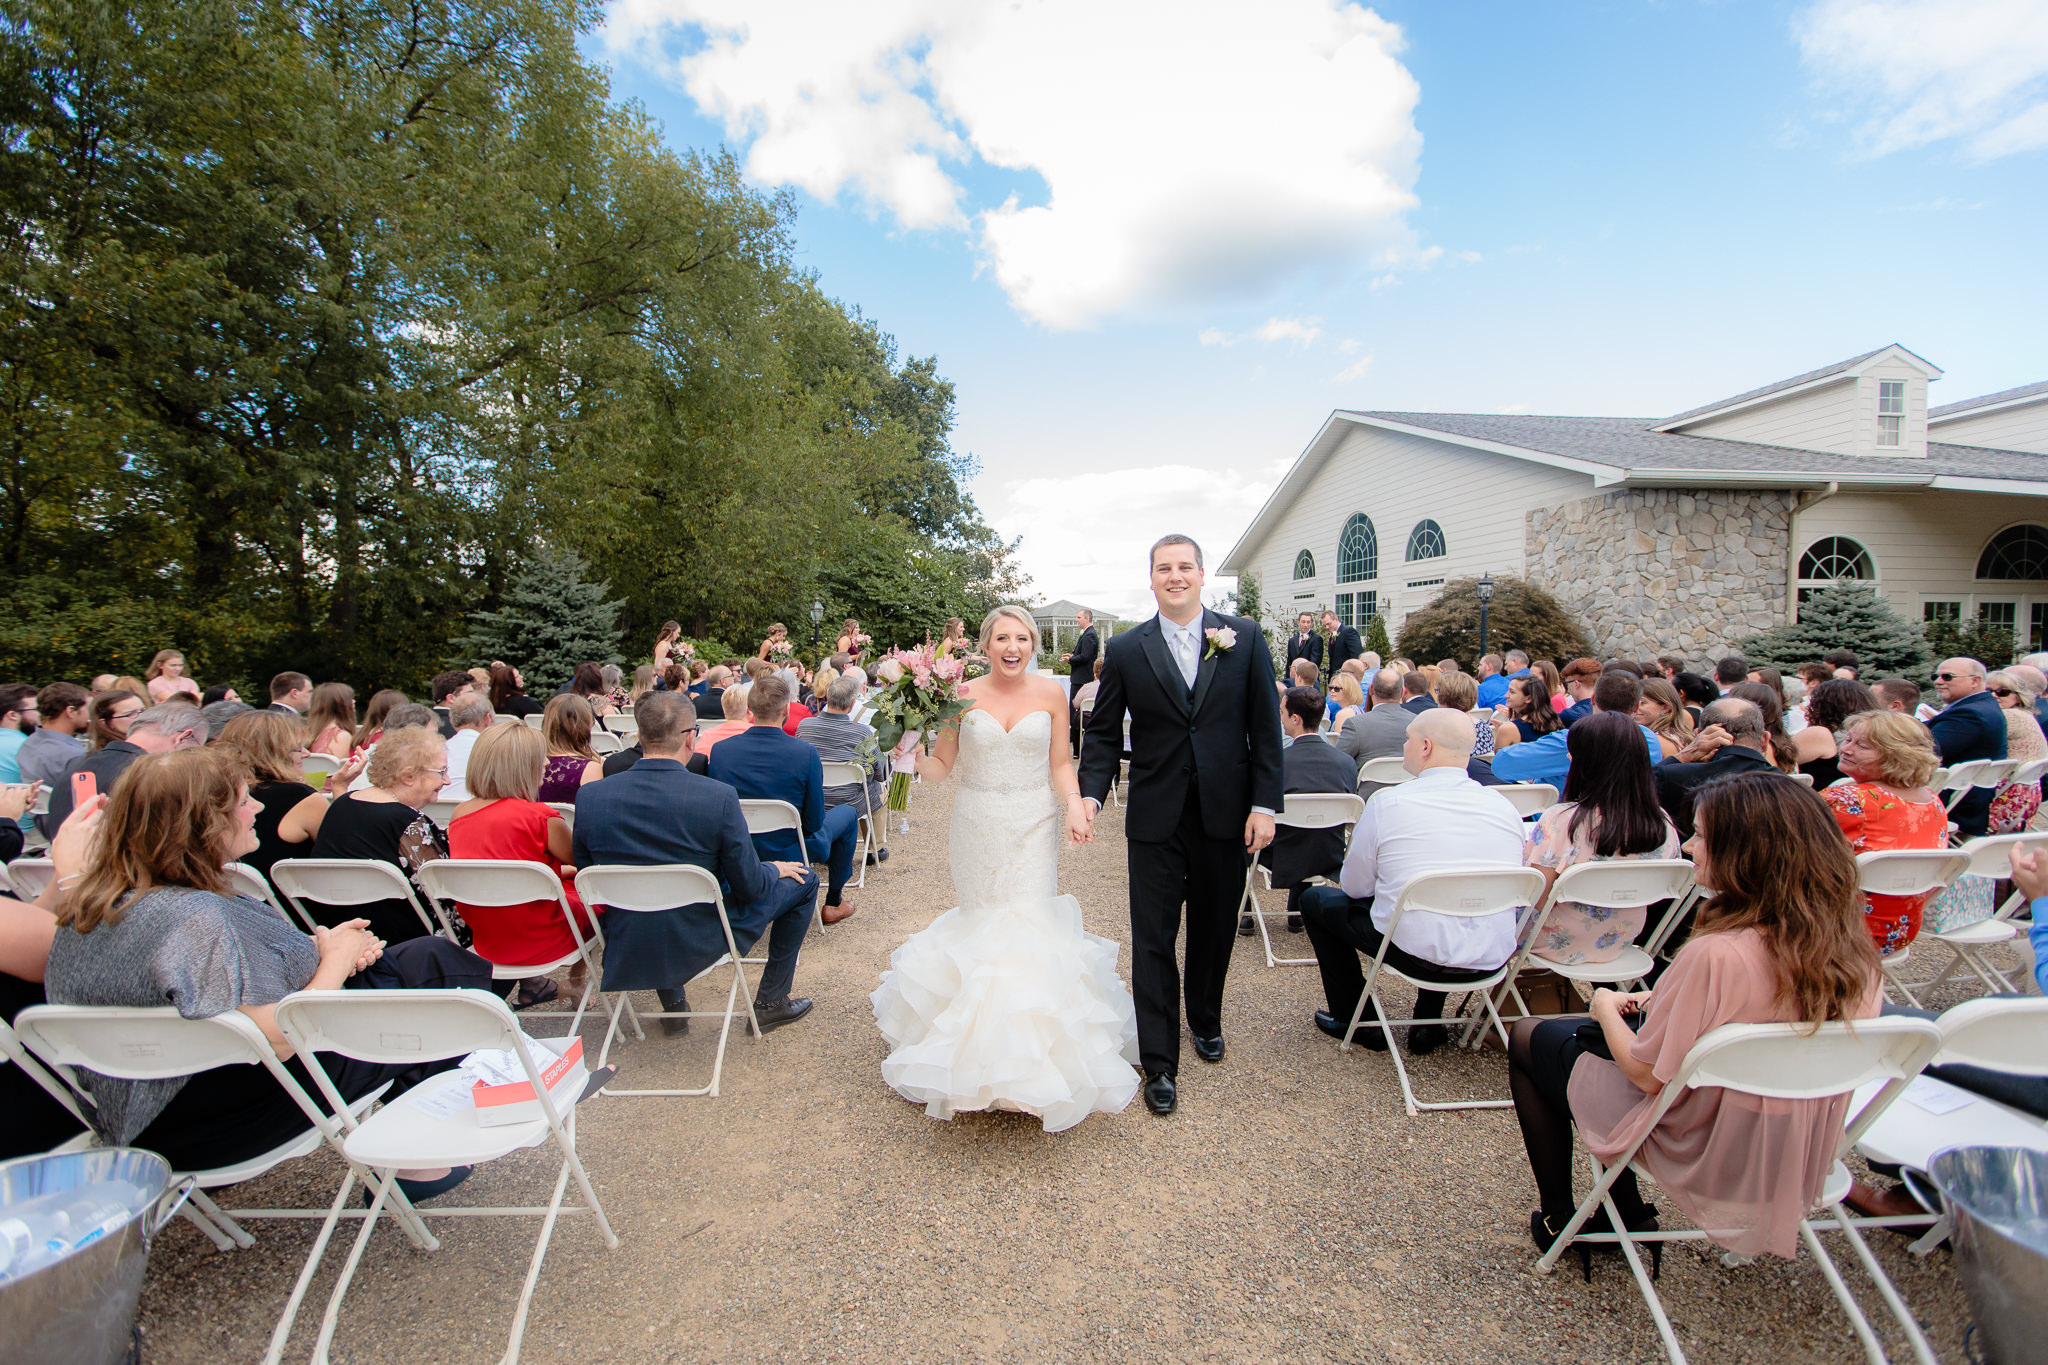 Newlyweds exit their wedding ceremony at Greystone Fields